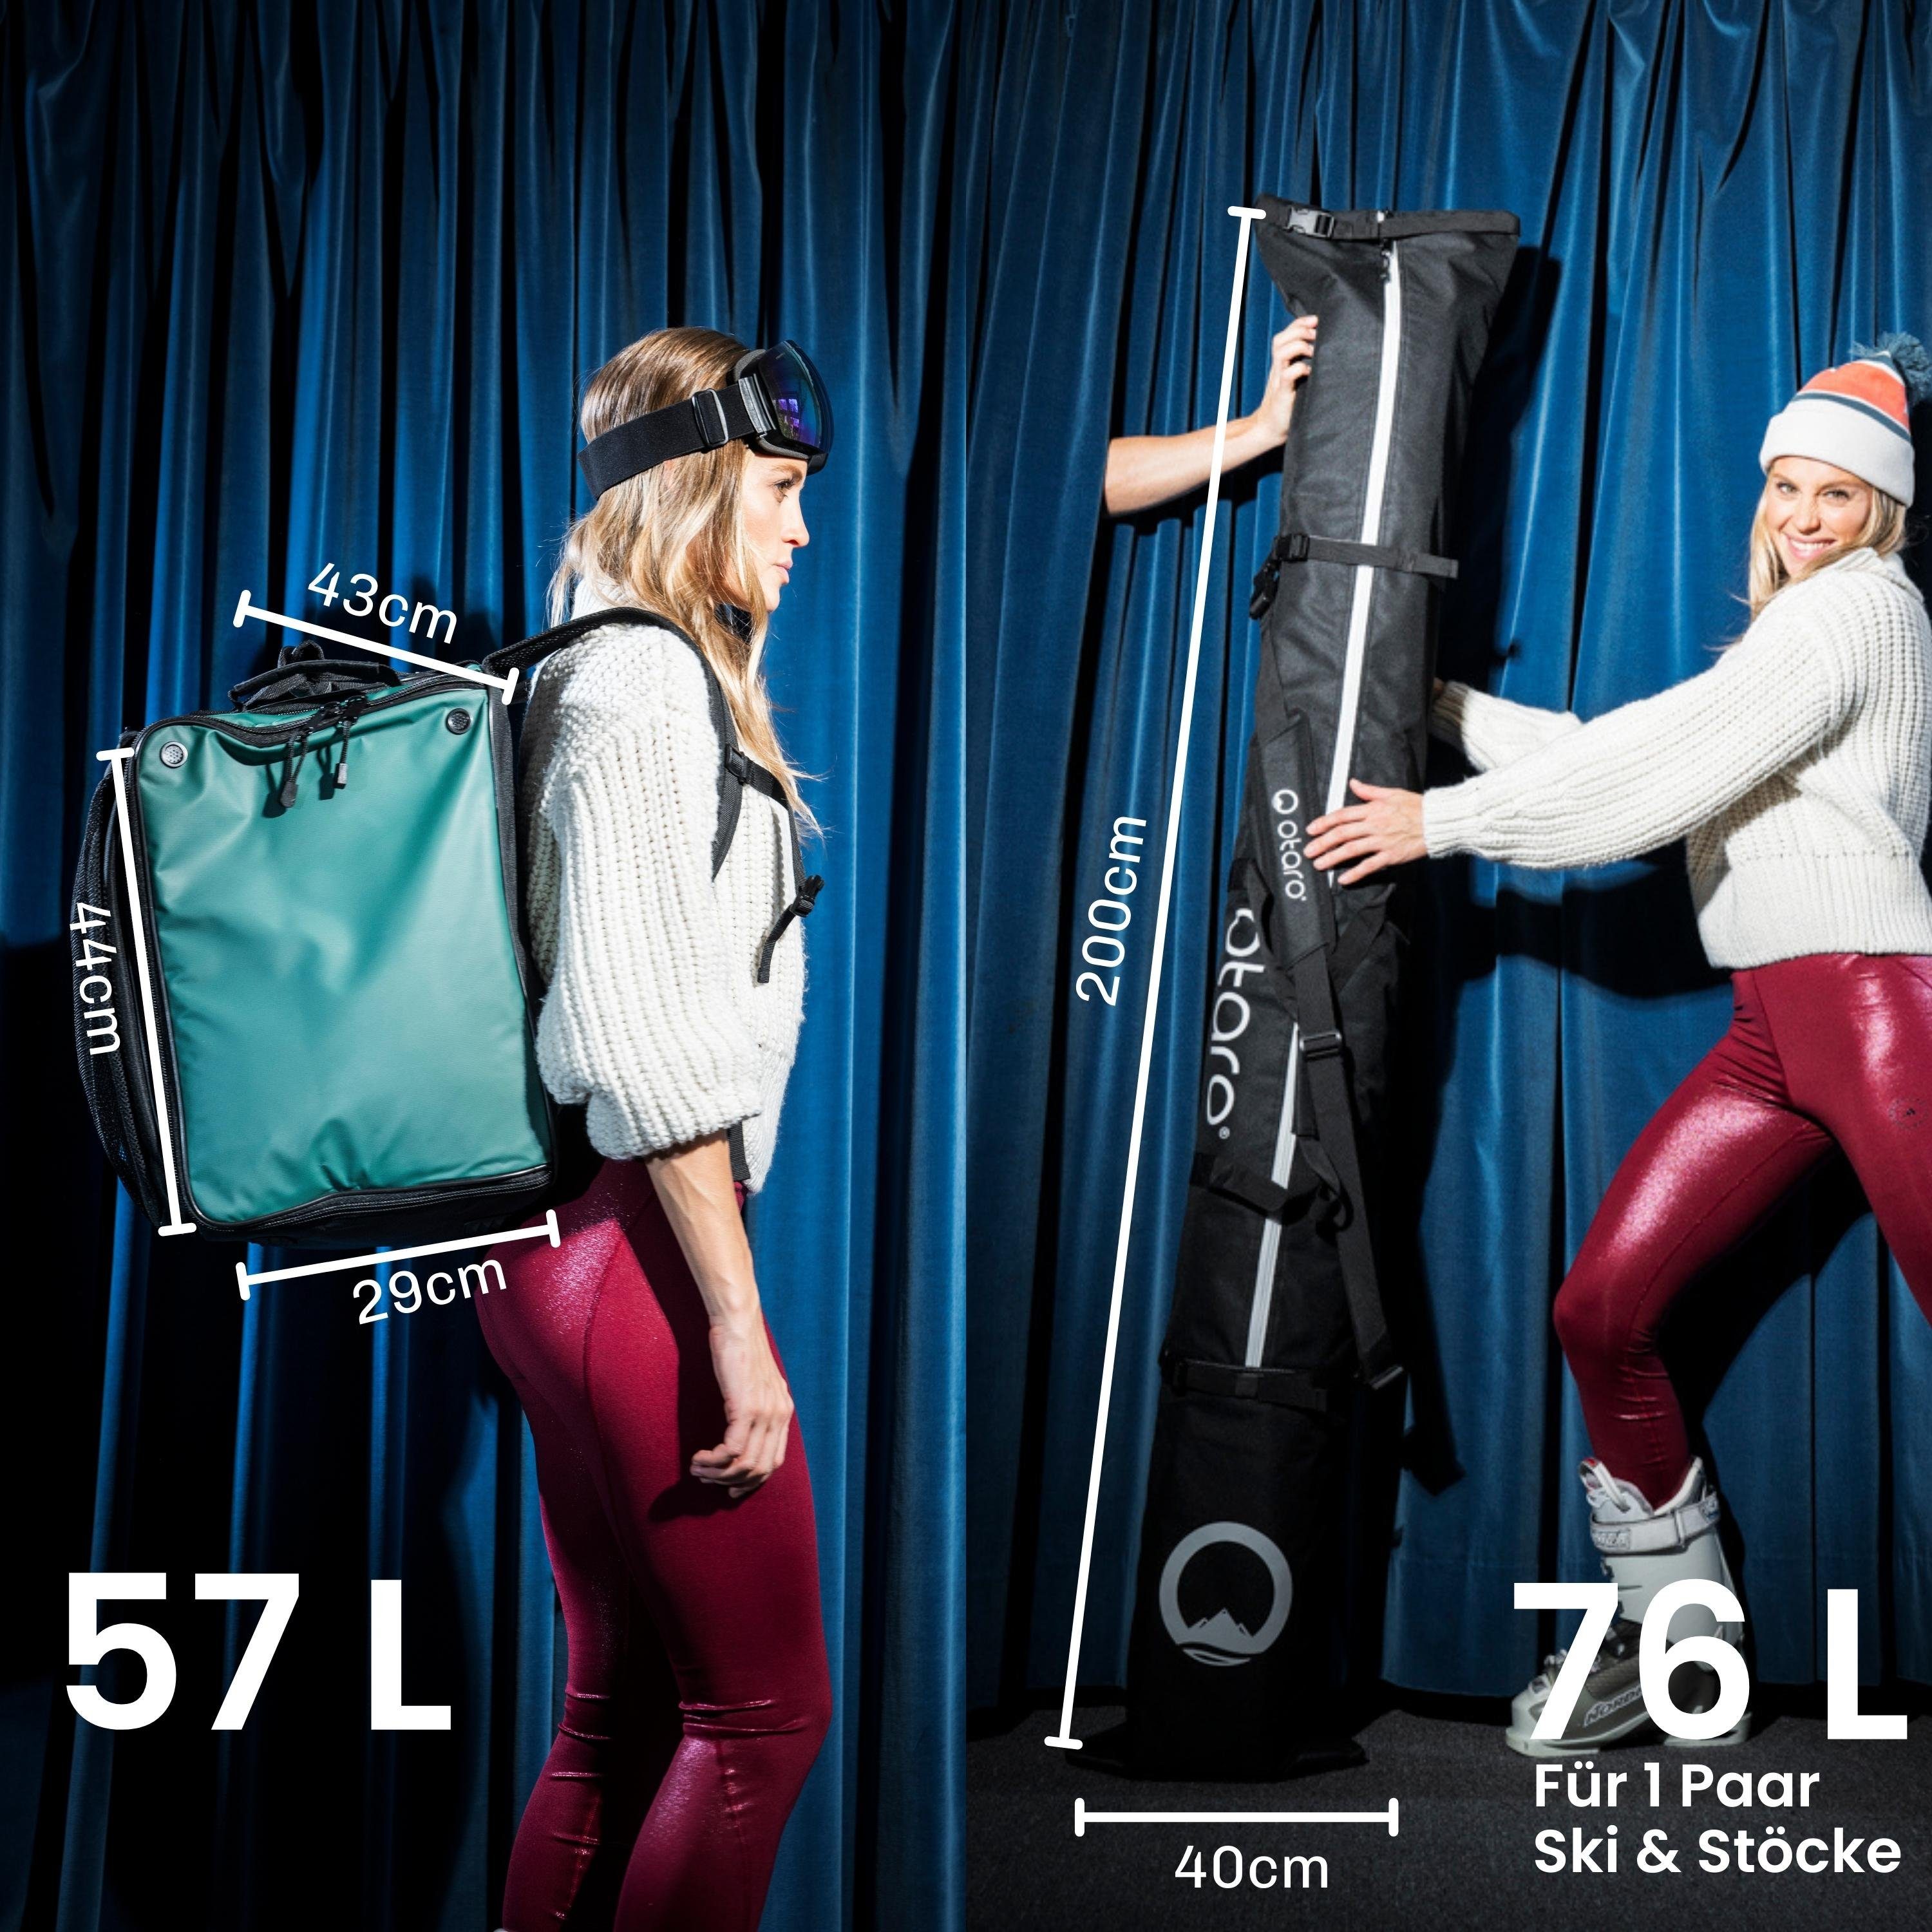 1 (Schutz Set: Ausrüstung, Paar ausklappbare für Ski Paar 1 & Tannengrün durchdacht, Schwarz Sporttasche für Ski Stöcke) Skischuhtasche Standfläche, deine Skitasche, Otaro + Pro-Set Perfekt für